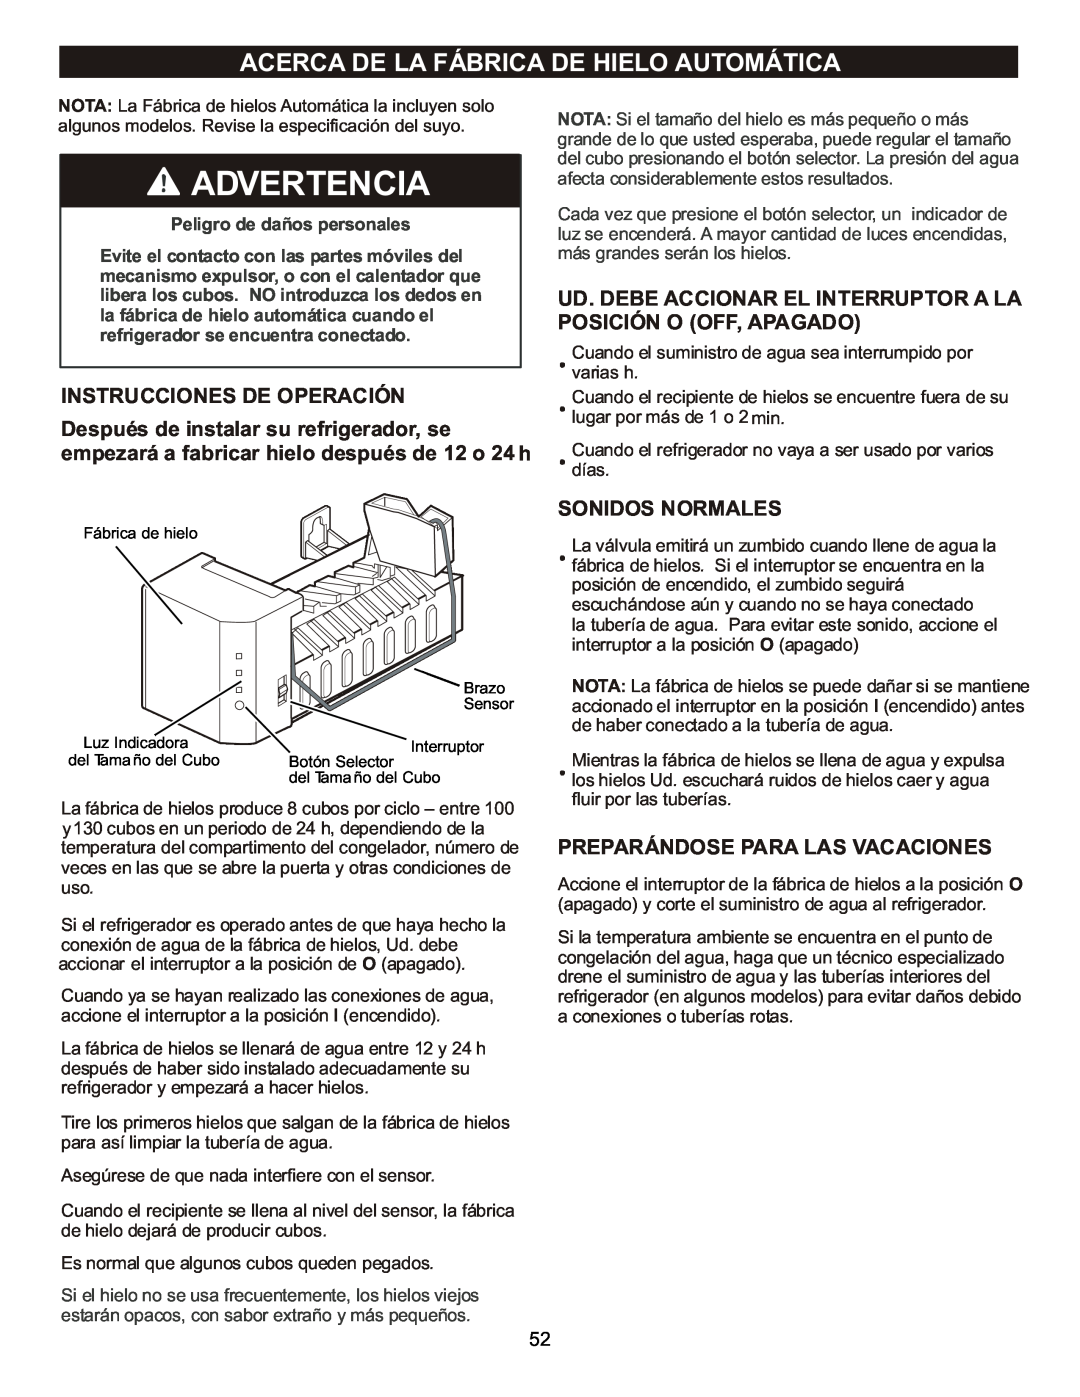 LG Electronics LFC23760 owner manual Acerca De La Fábrica De Hielo Automática, Instrucciones De Operación, Sonidos Normales 